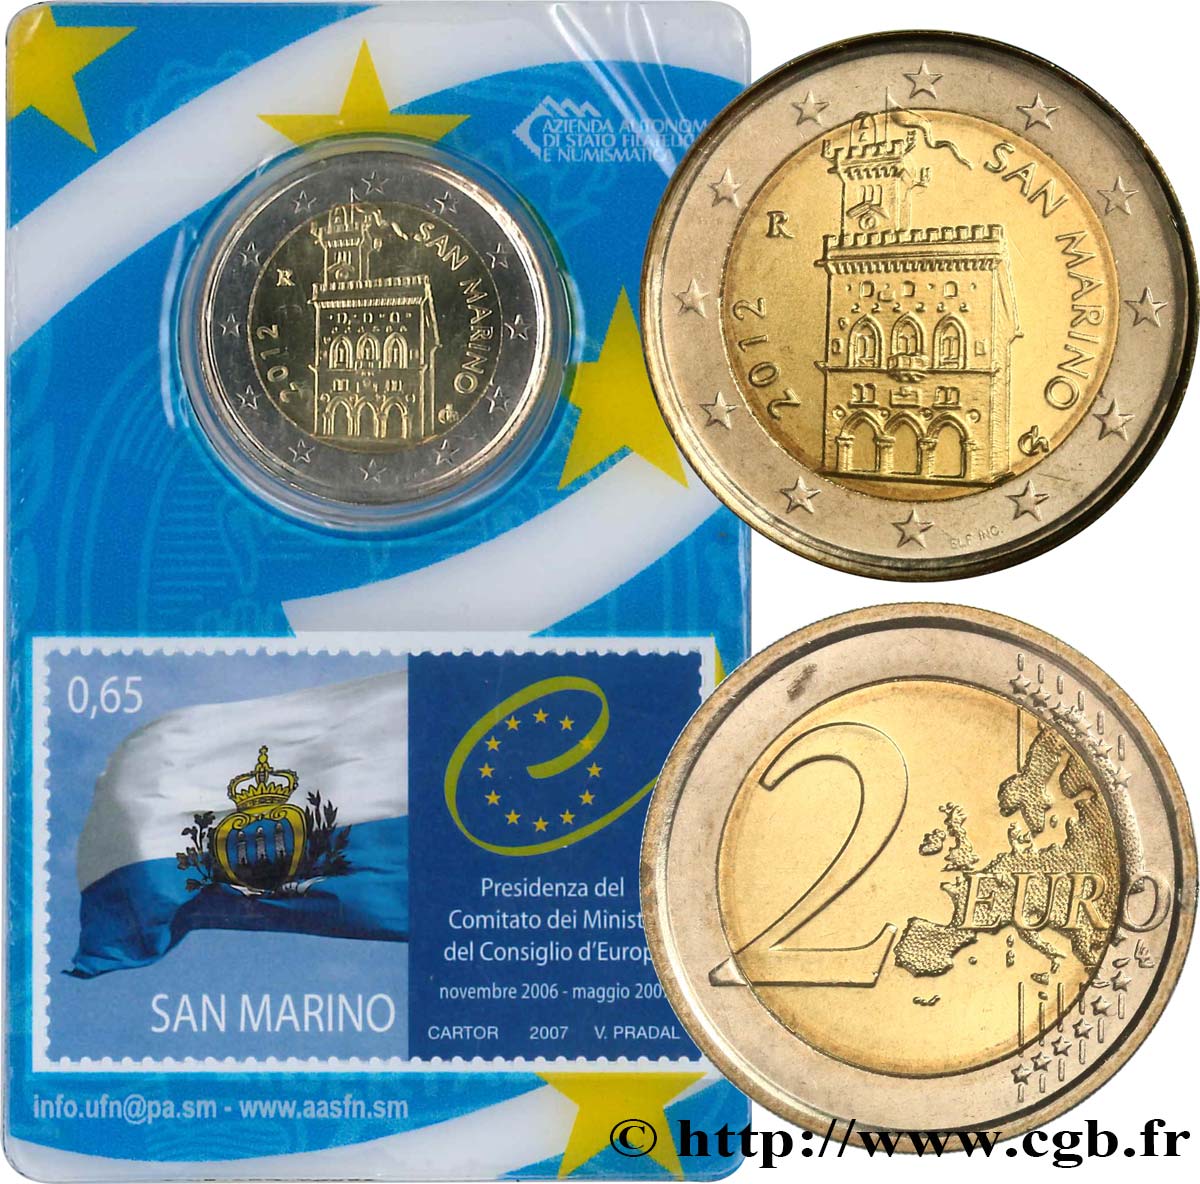 RÉPUBLIQUE DE SAINT- MARIN Coin-Card / Timbre 2 Euro DOMUS MAGNA - PRÉSIDENCE DU CONSEIL DES MINISTRES DU CONSEIL DE L’EUROPE 2012 FDC